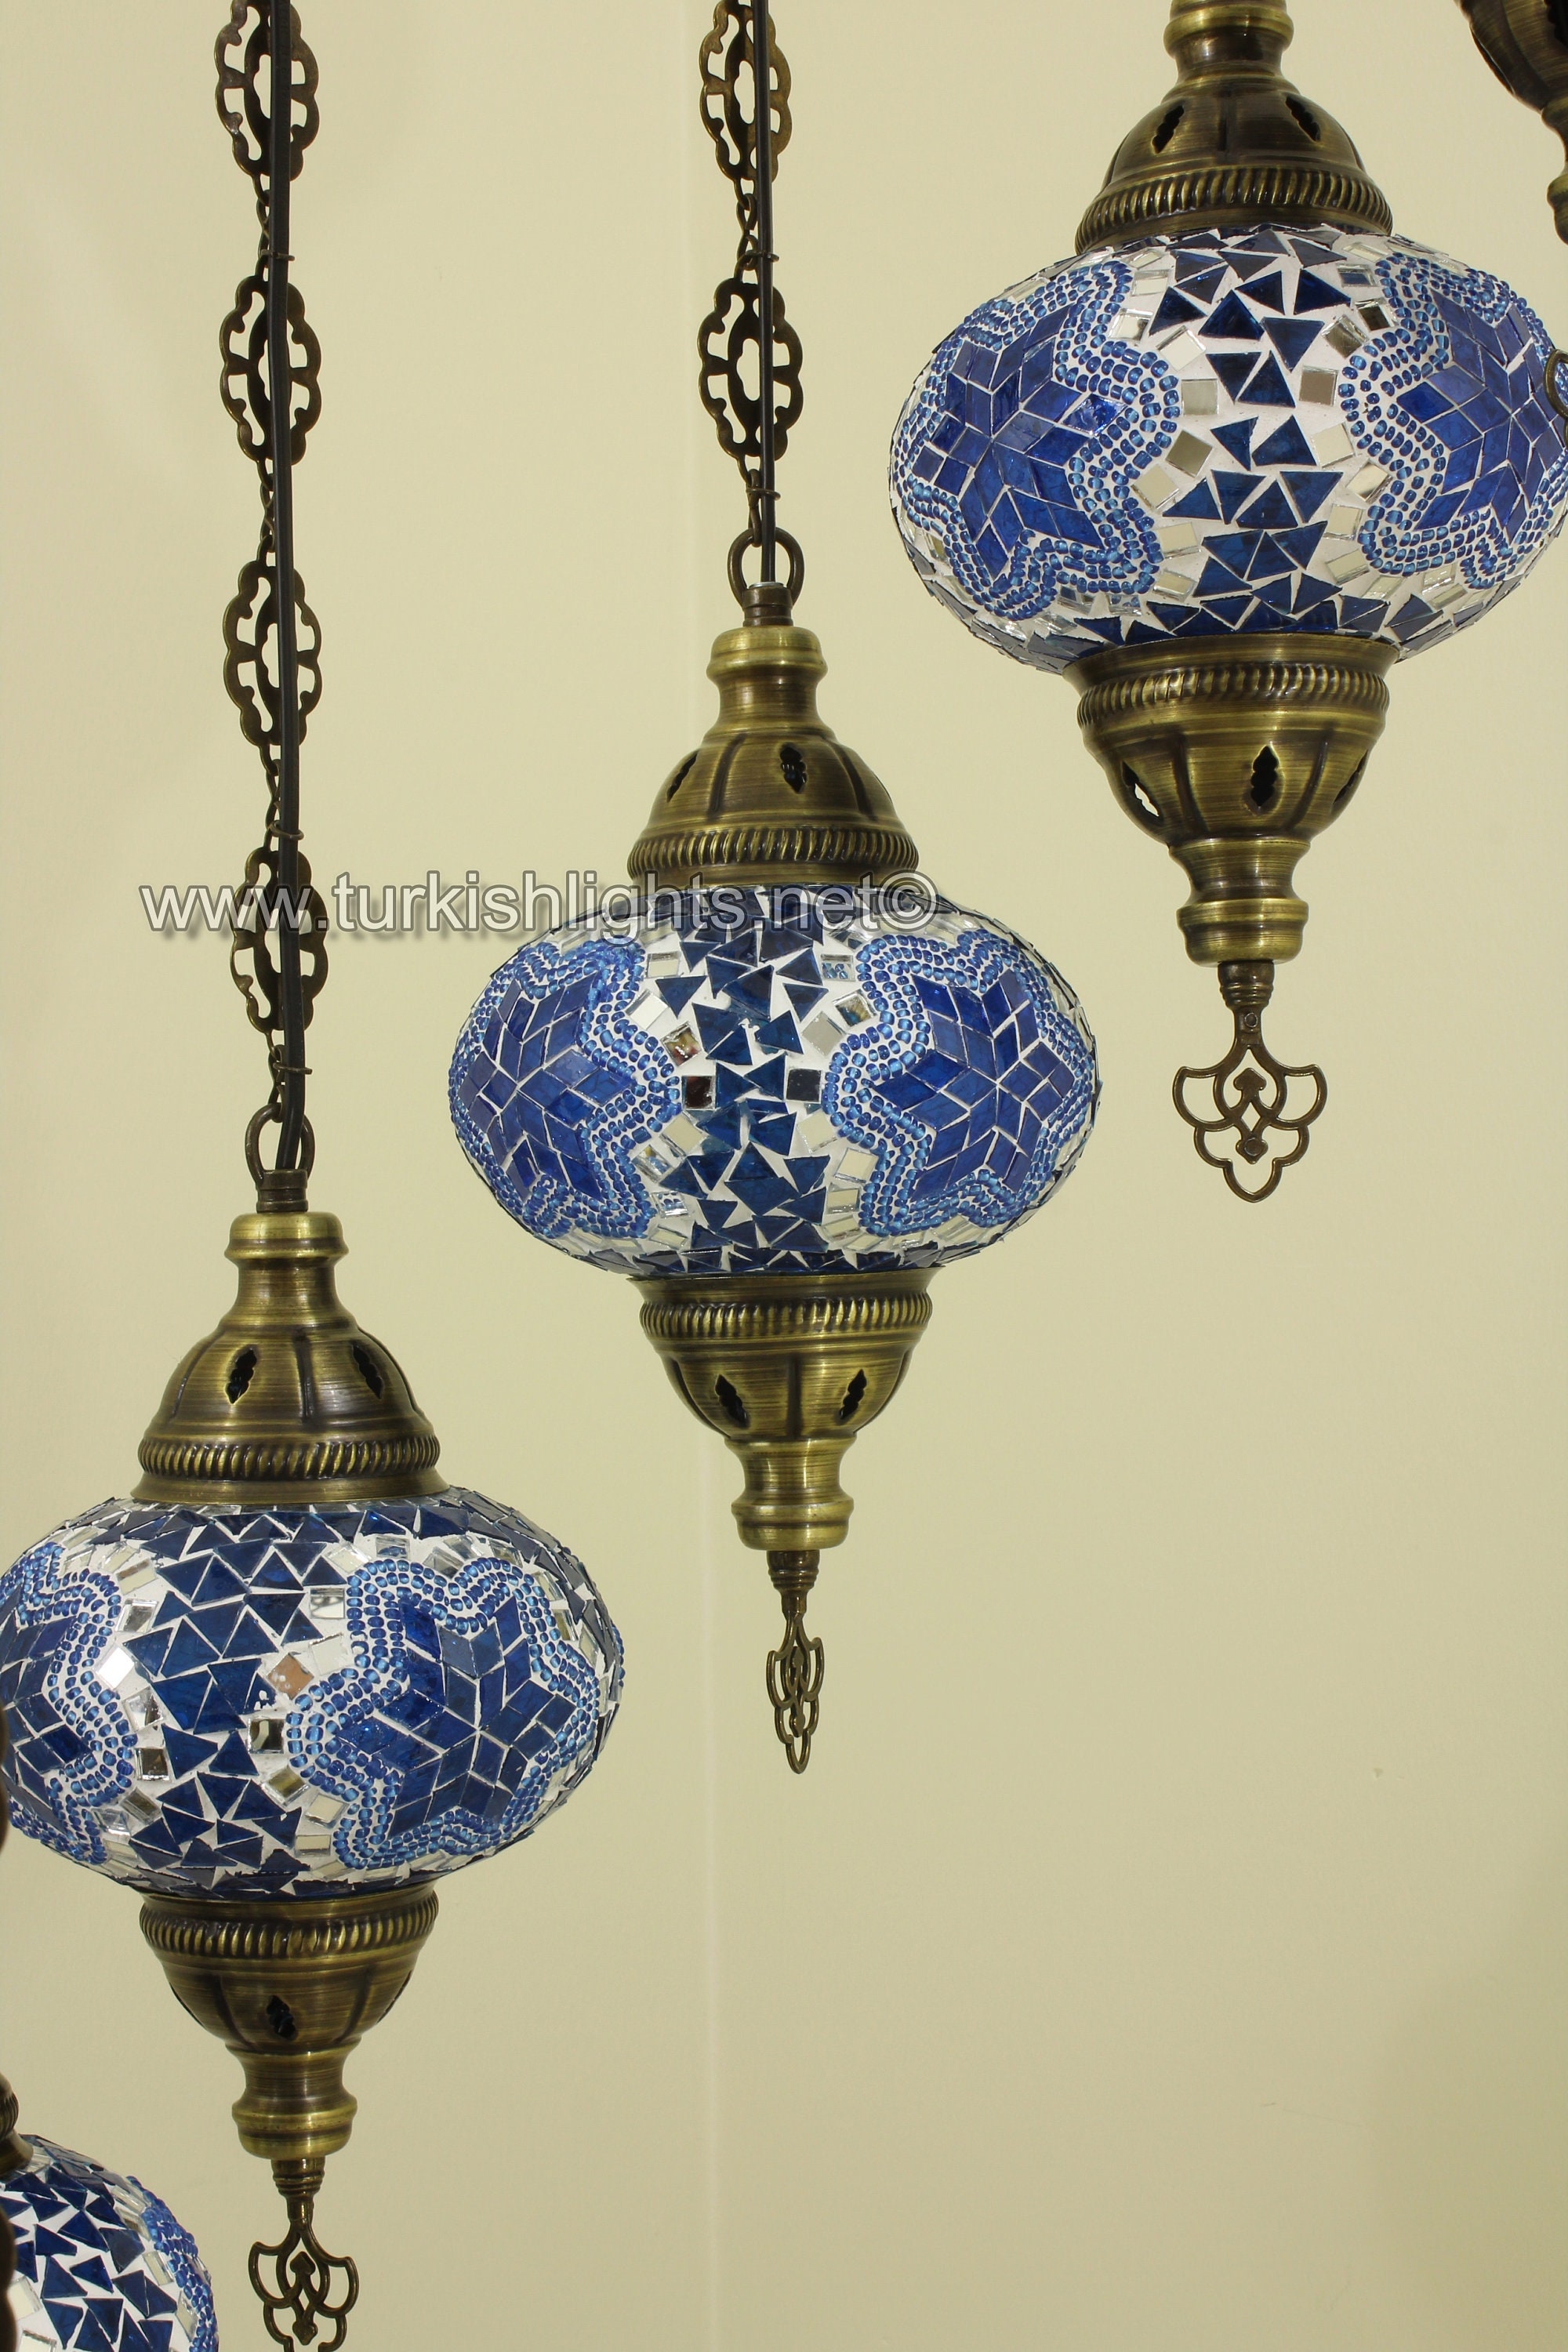 Lampada turca azzurra con braccio h 45 cm